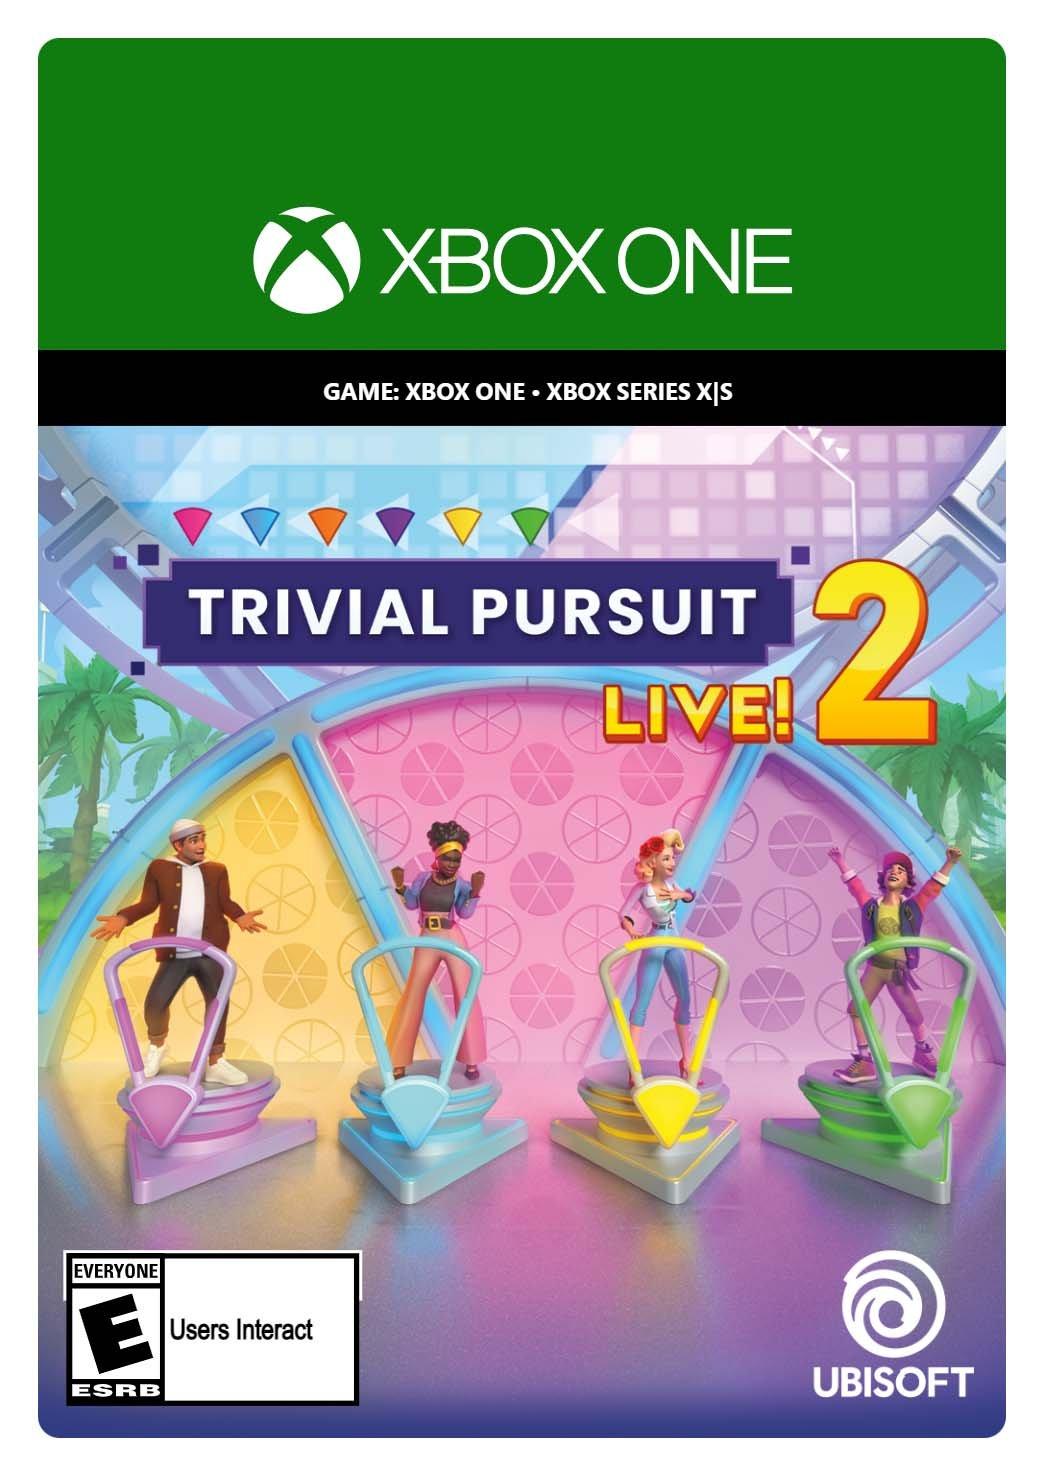 TRIVIAL PURSUIT Live! 2, Ubisoft